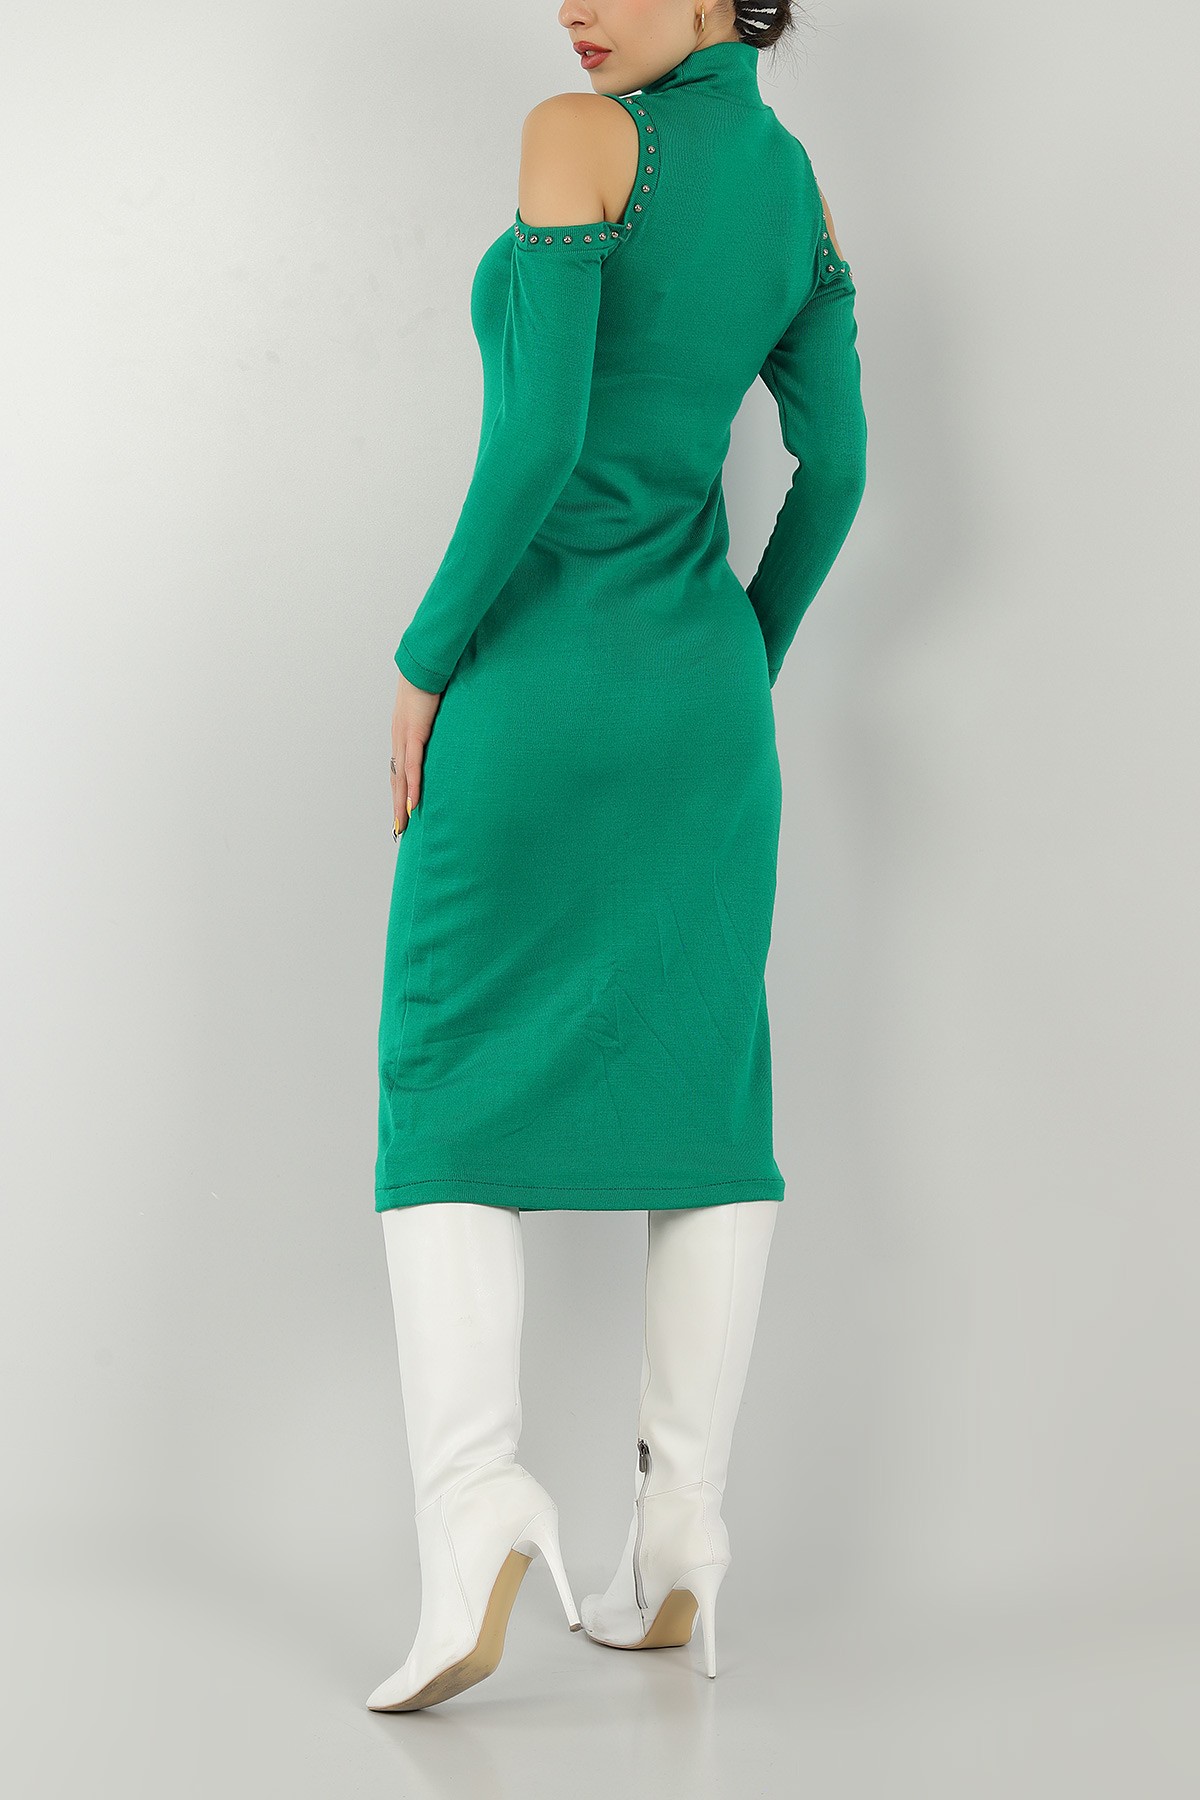 Yeşil Taşlı Tasarım Triko Elbise 146773